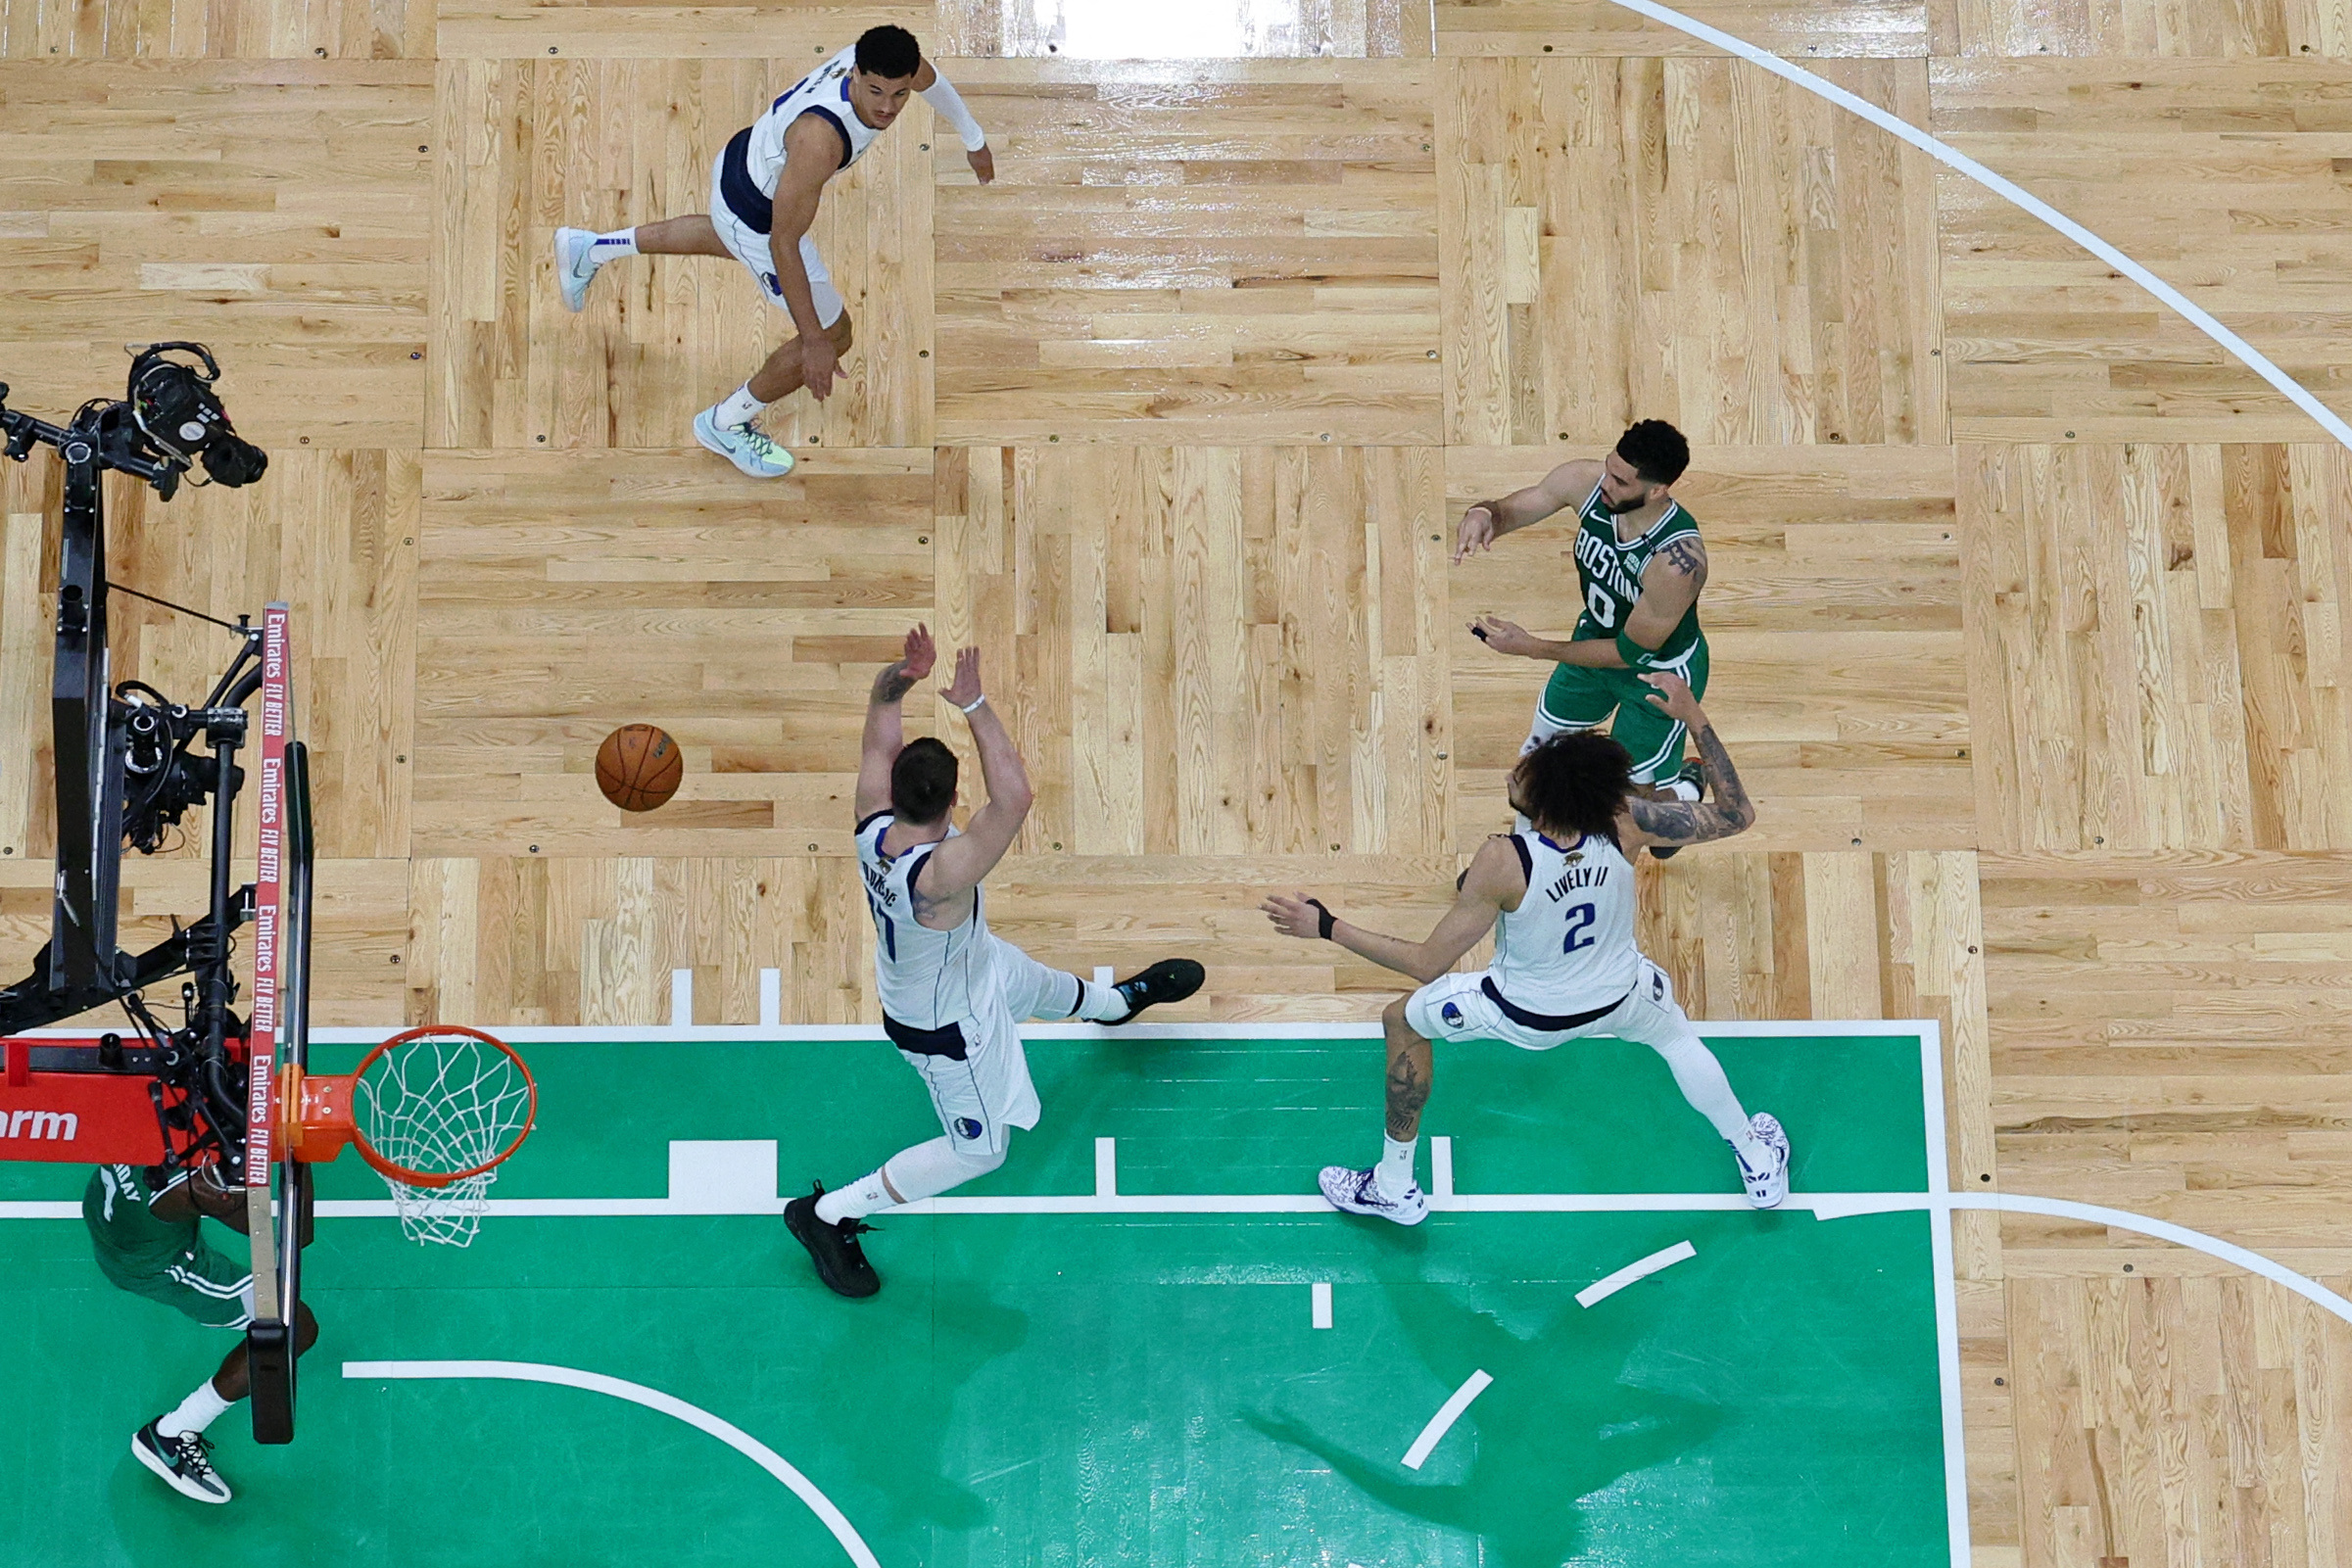 Dallas Mavericks vs Boston Celtics